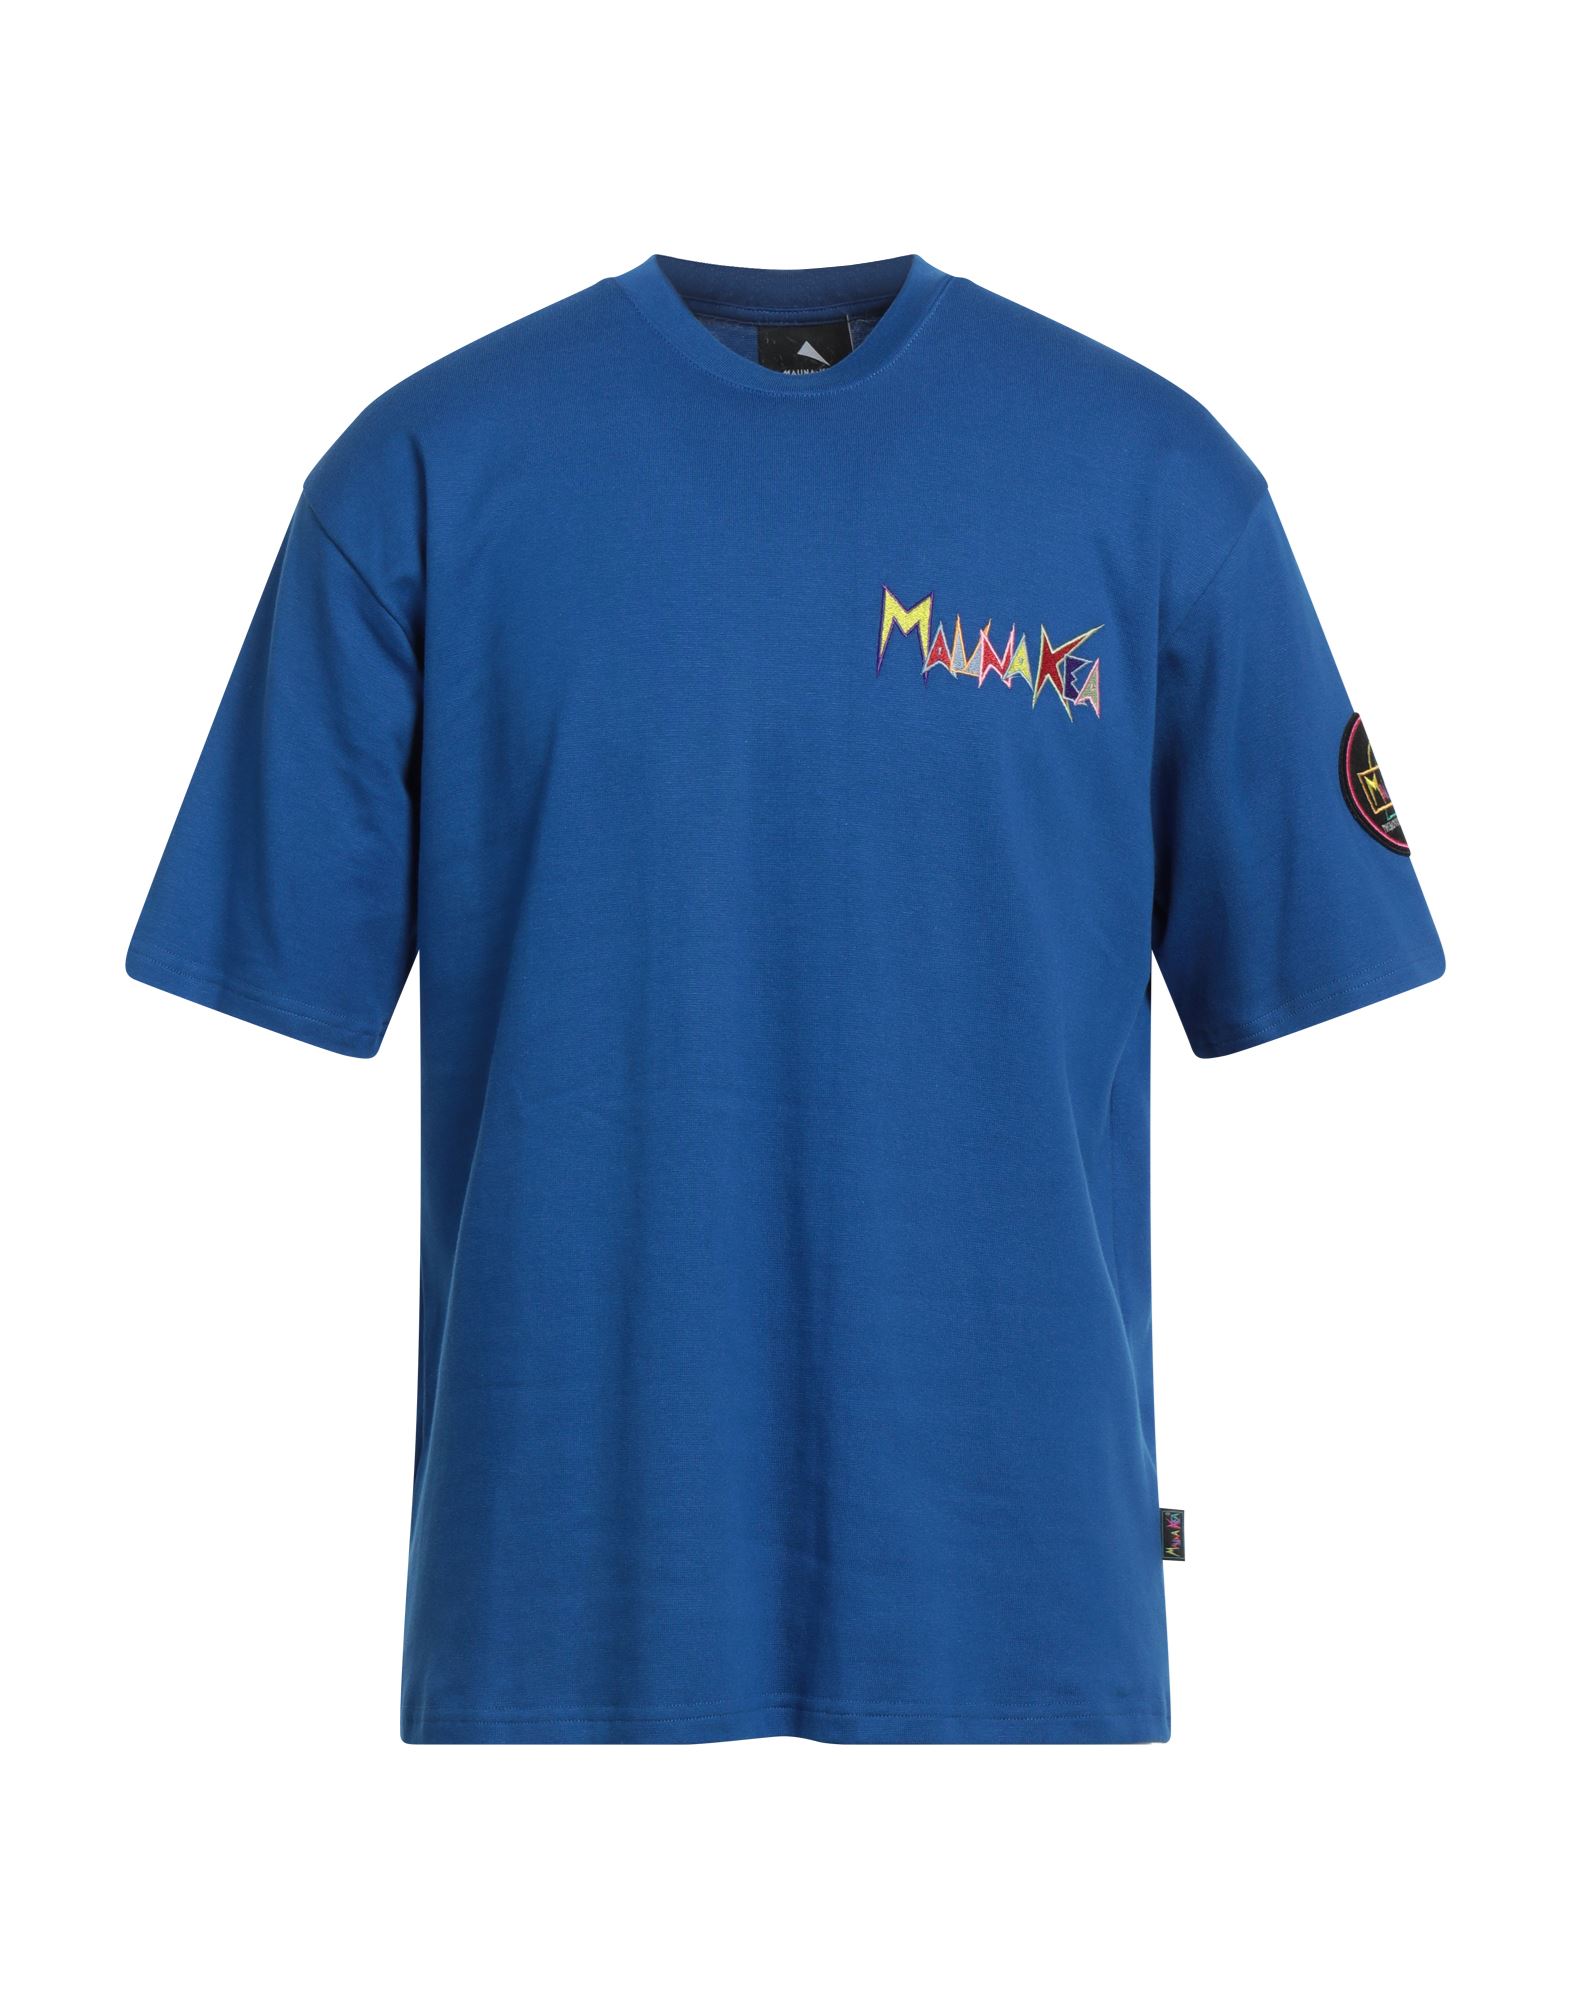 MAUNA KEA T-shirts Herren Blau von MAUNA KEA